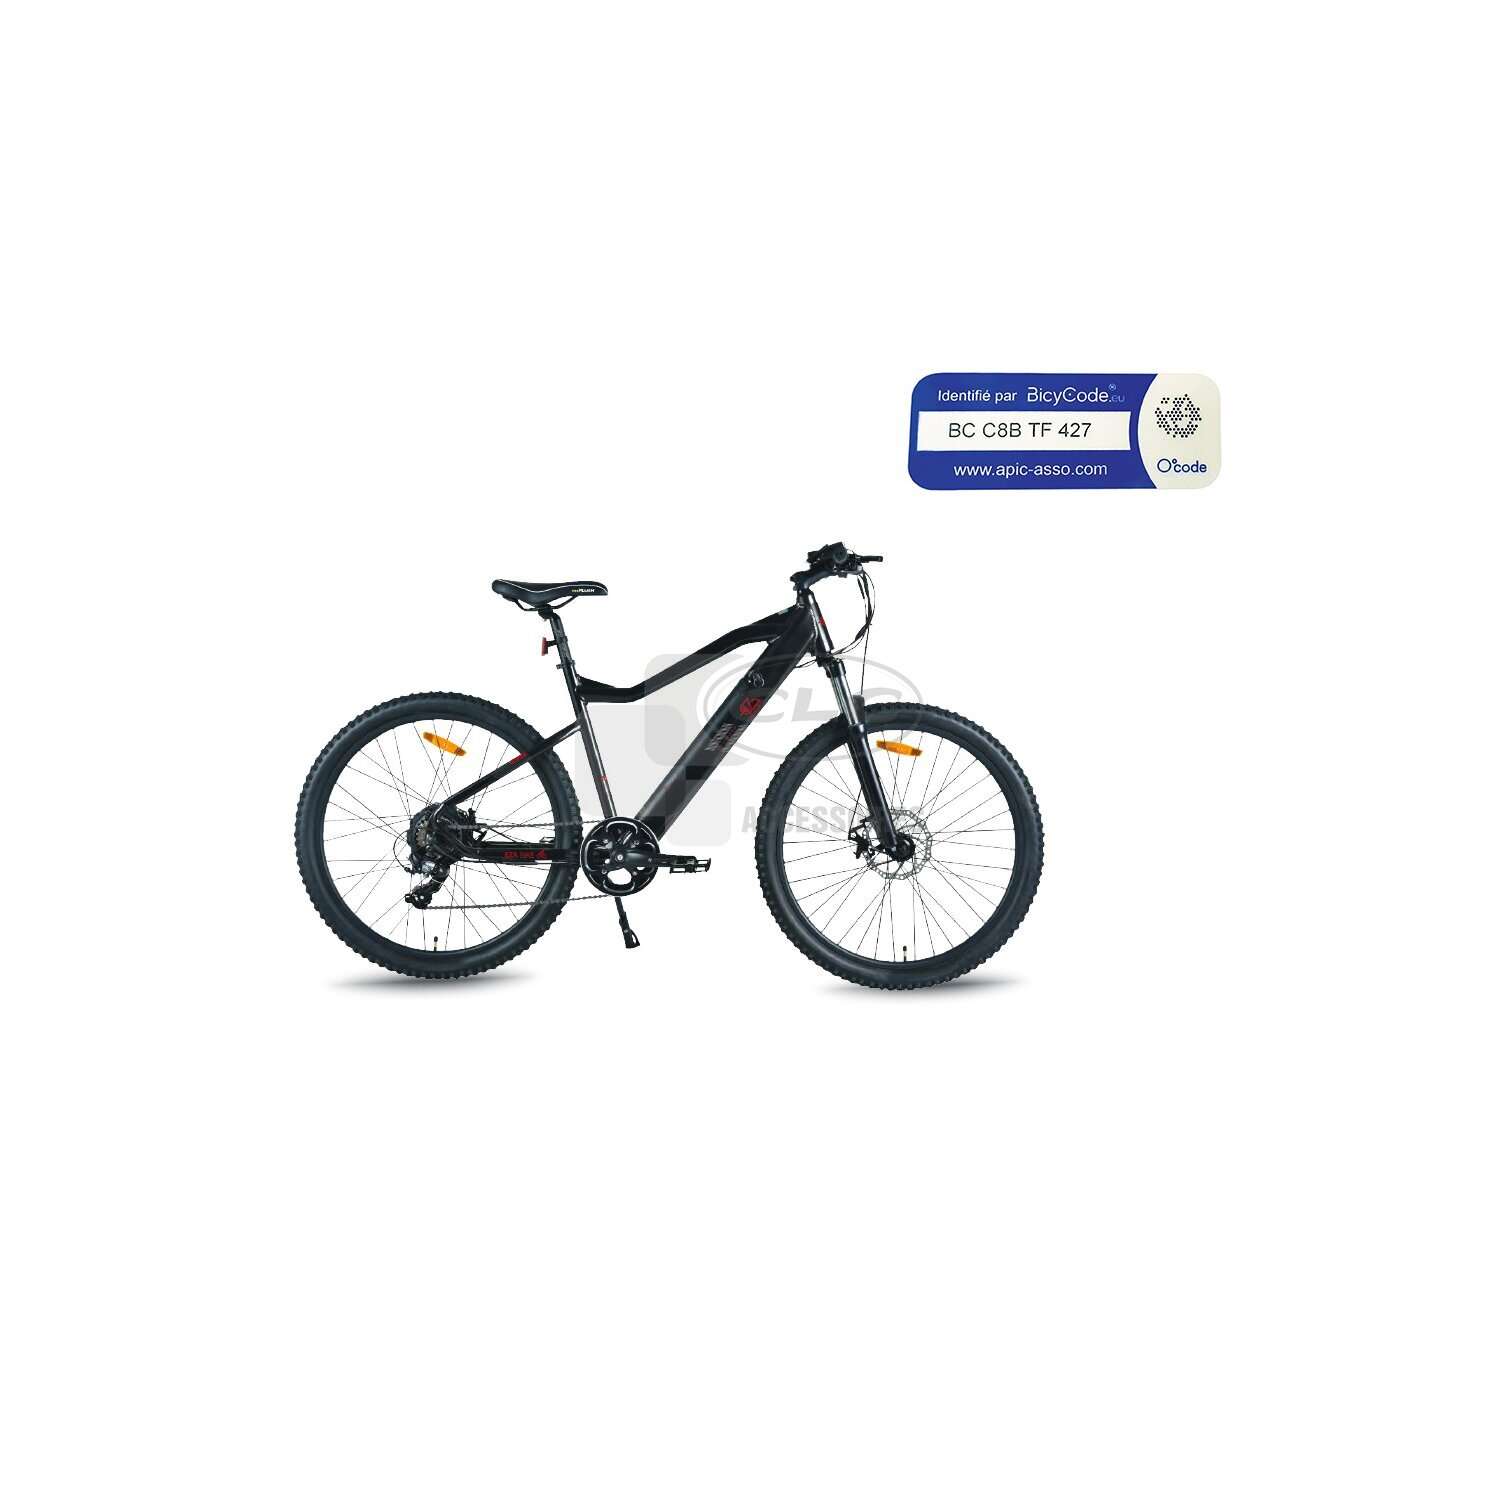 Pimp My Ride : 5 accessoires pour booster votre vélo